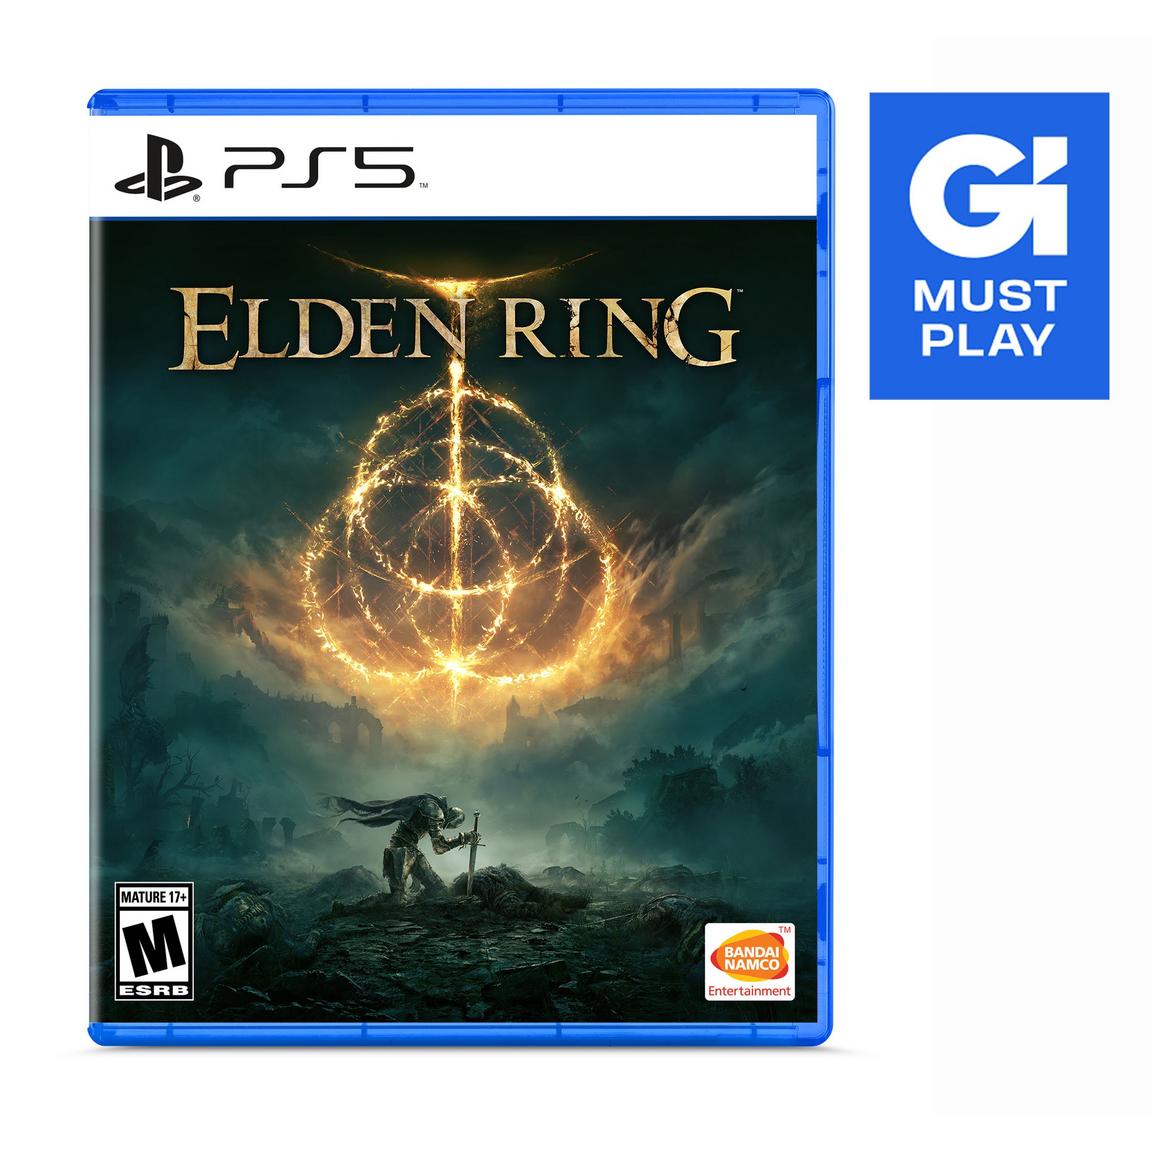 Видеоигра Elden Ring - PlayStation 5 дуган э джозеф ф морвин 7 дней магии раскрывая тайны америки магия бразилии комплект из 3 книг